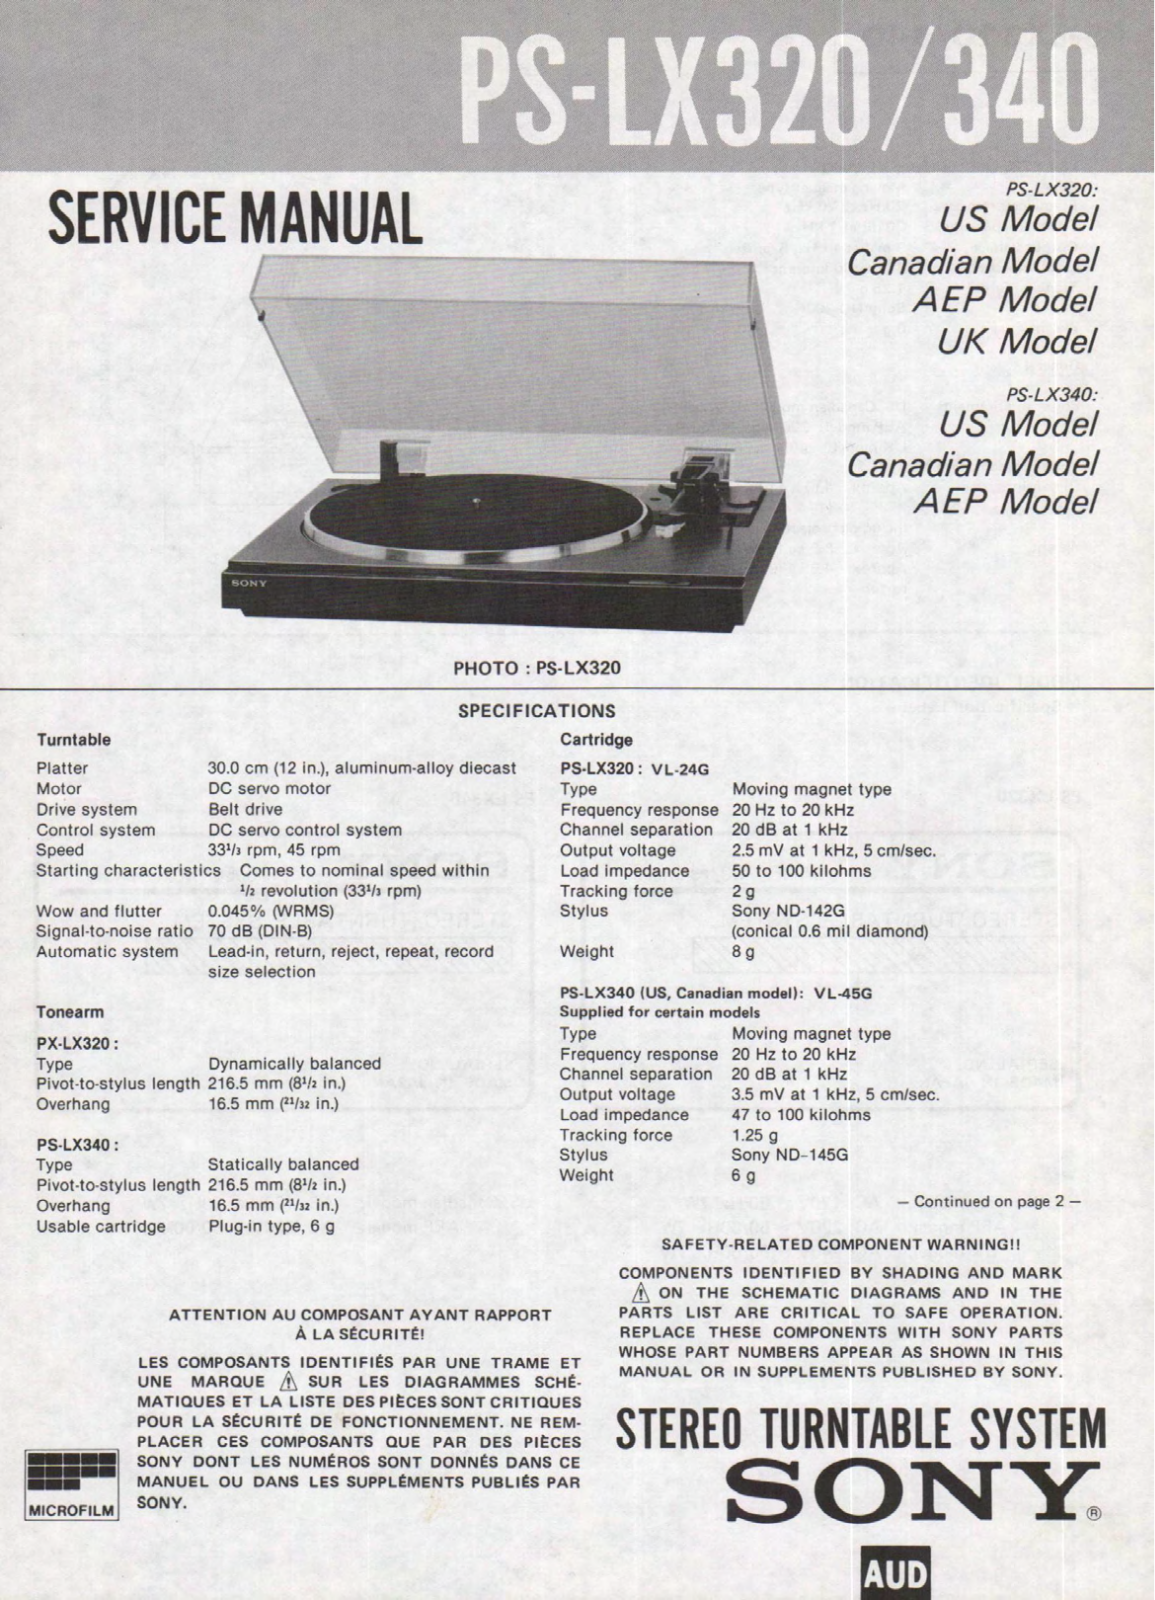 Sony PS-LX340 Service Manual